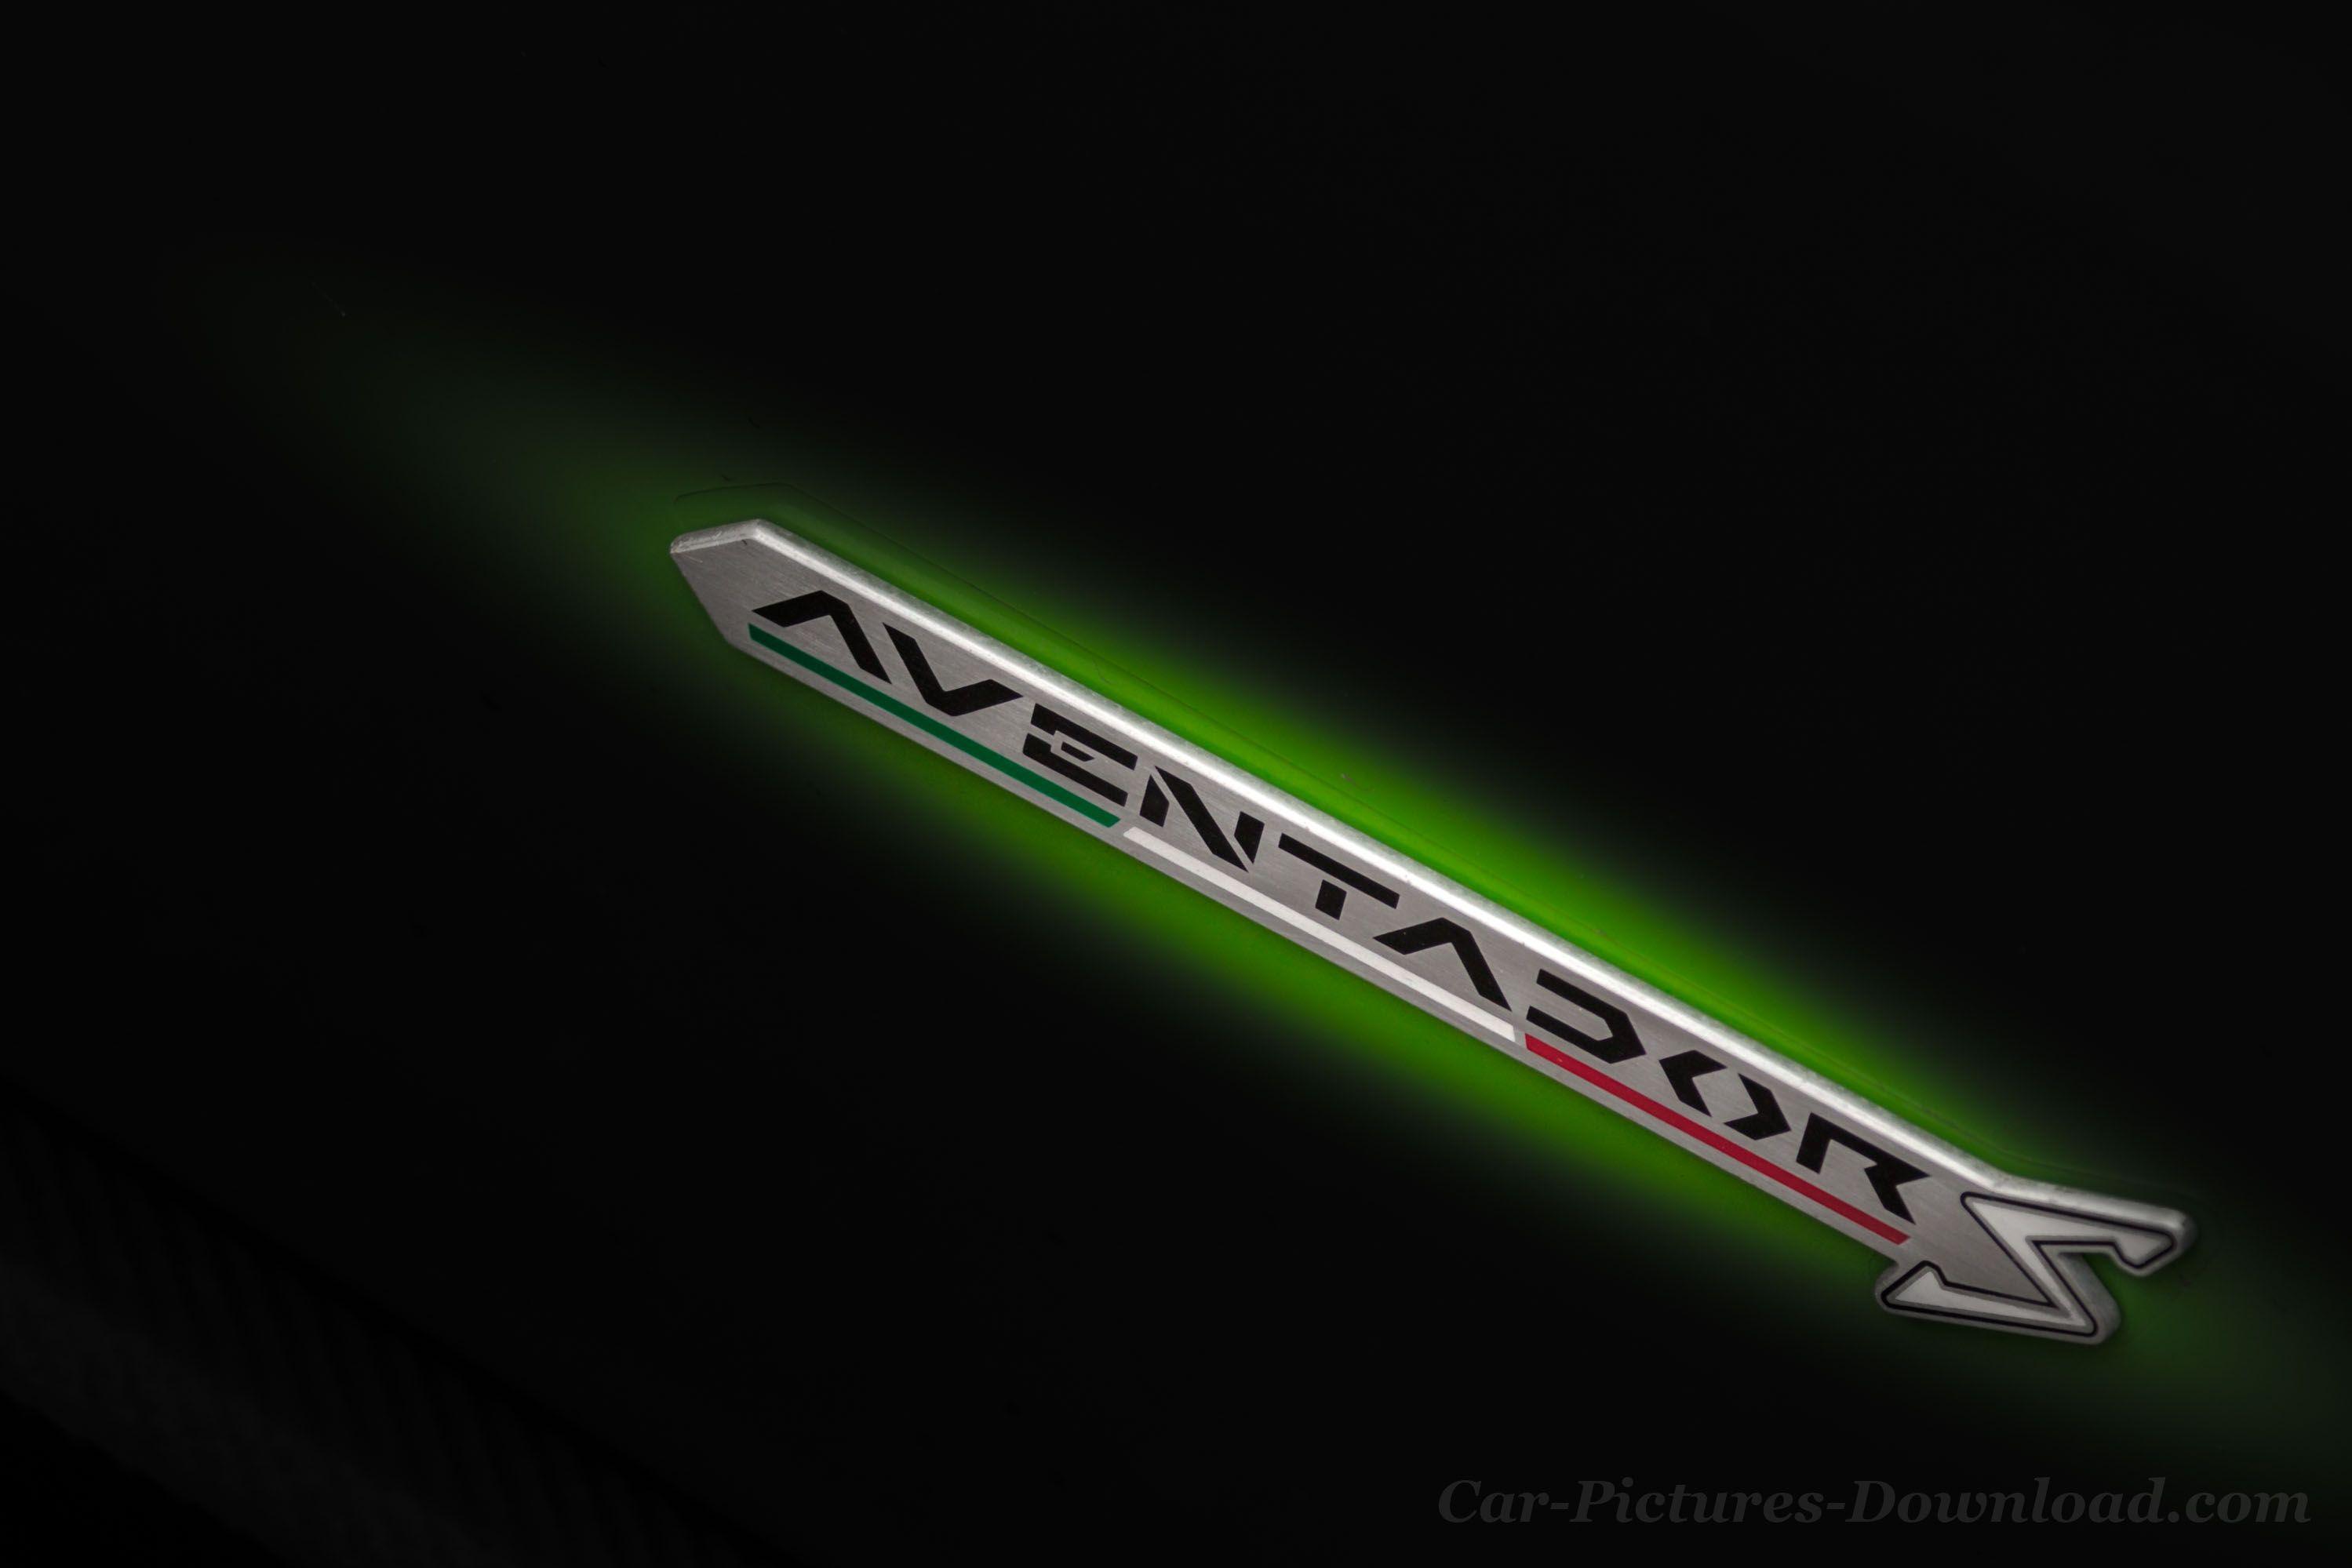 Aventador Logo - Lamborghini Wallpaper HD & Logo Image In Hi Res Free To Download